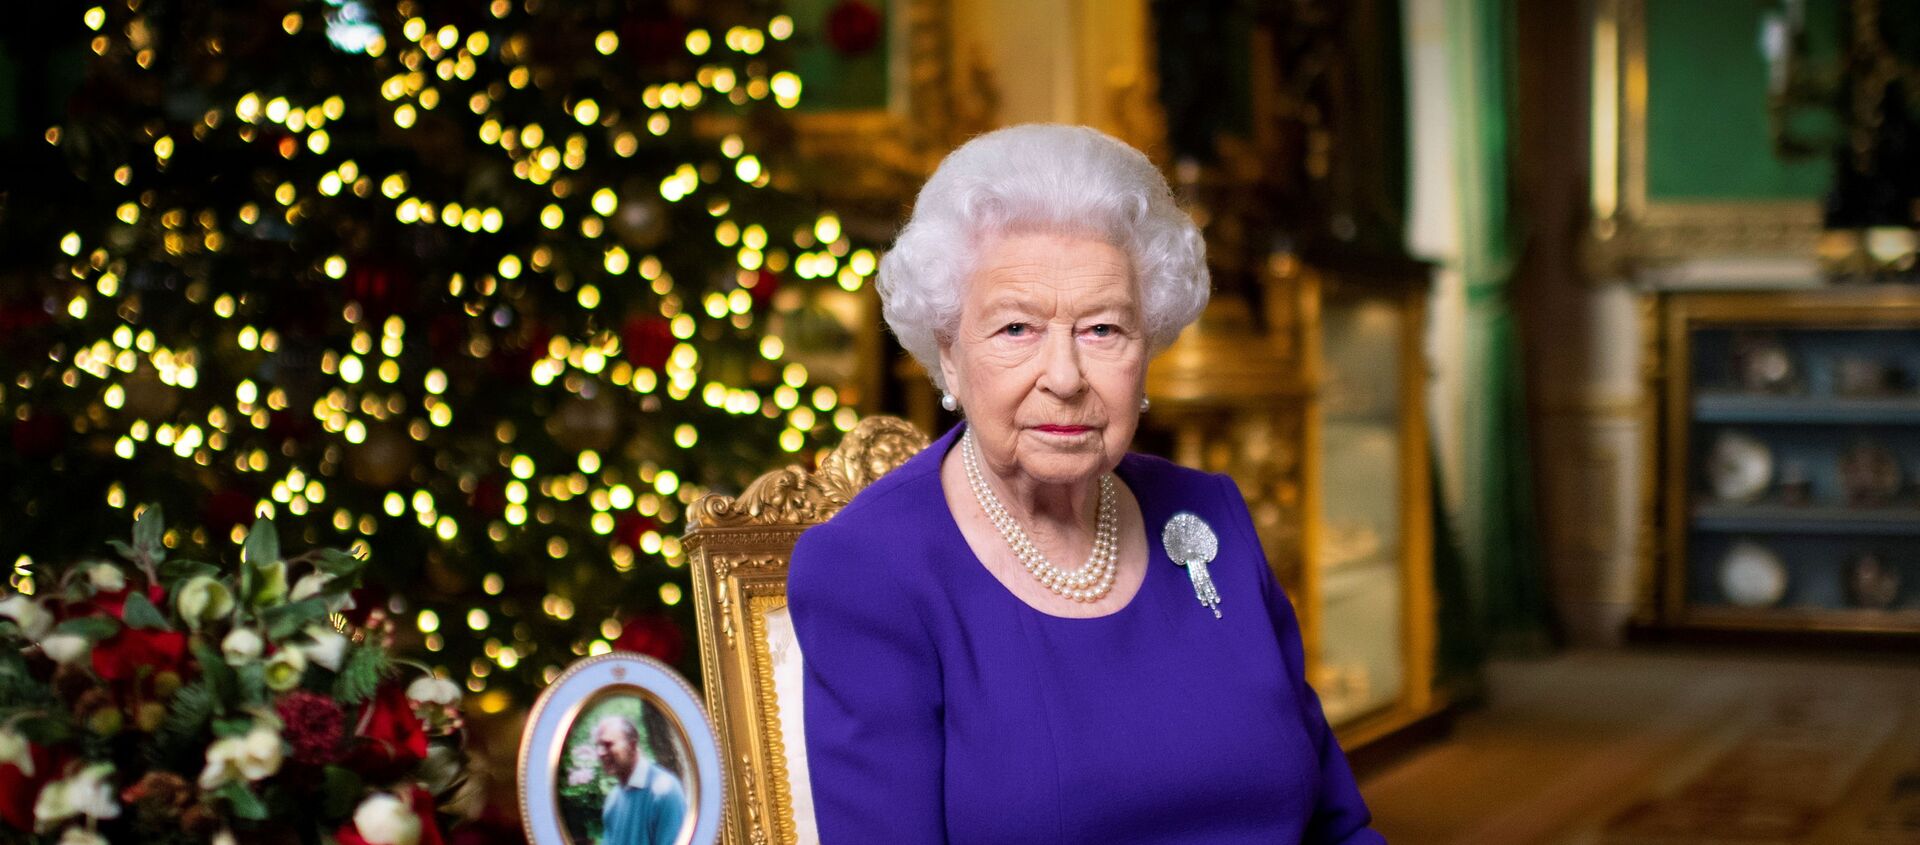 ملكة بريطانيا إليزابيث الثانية خلال خطابها للكريسماس، 24 ديسمبر/ كانون الأول 2020 - سبوتنيك عربي, 1920, 26.02.2021